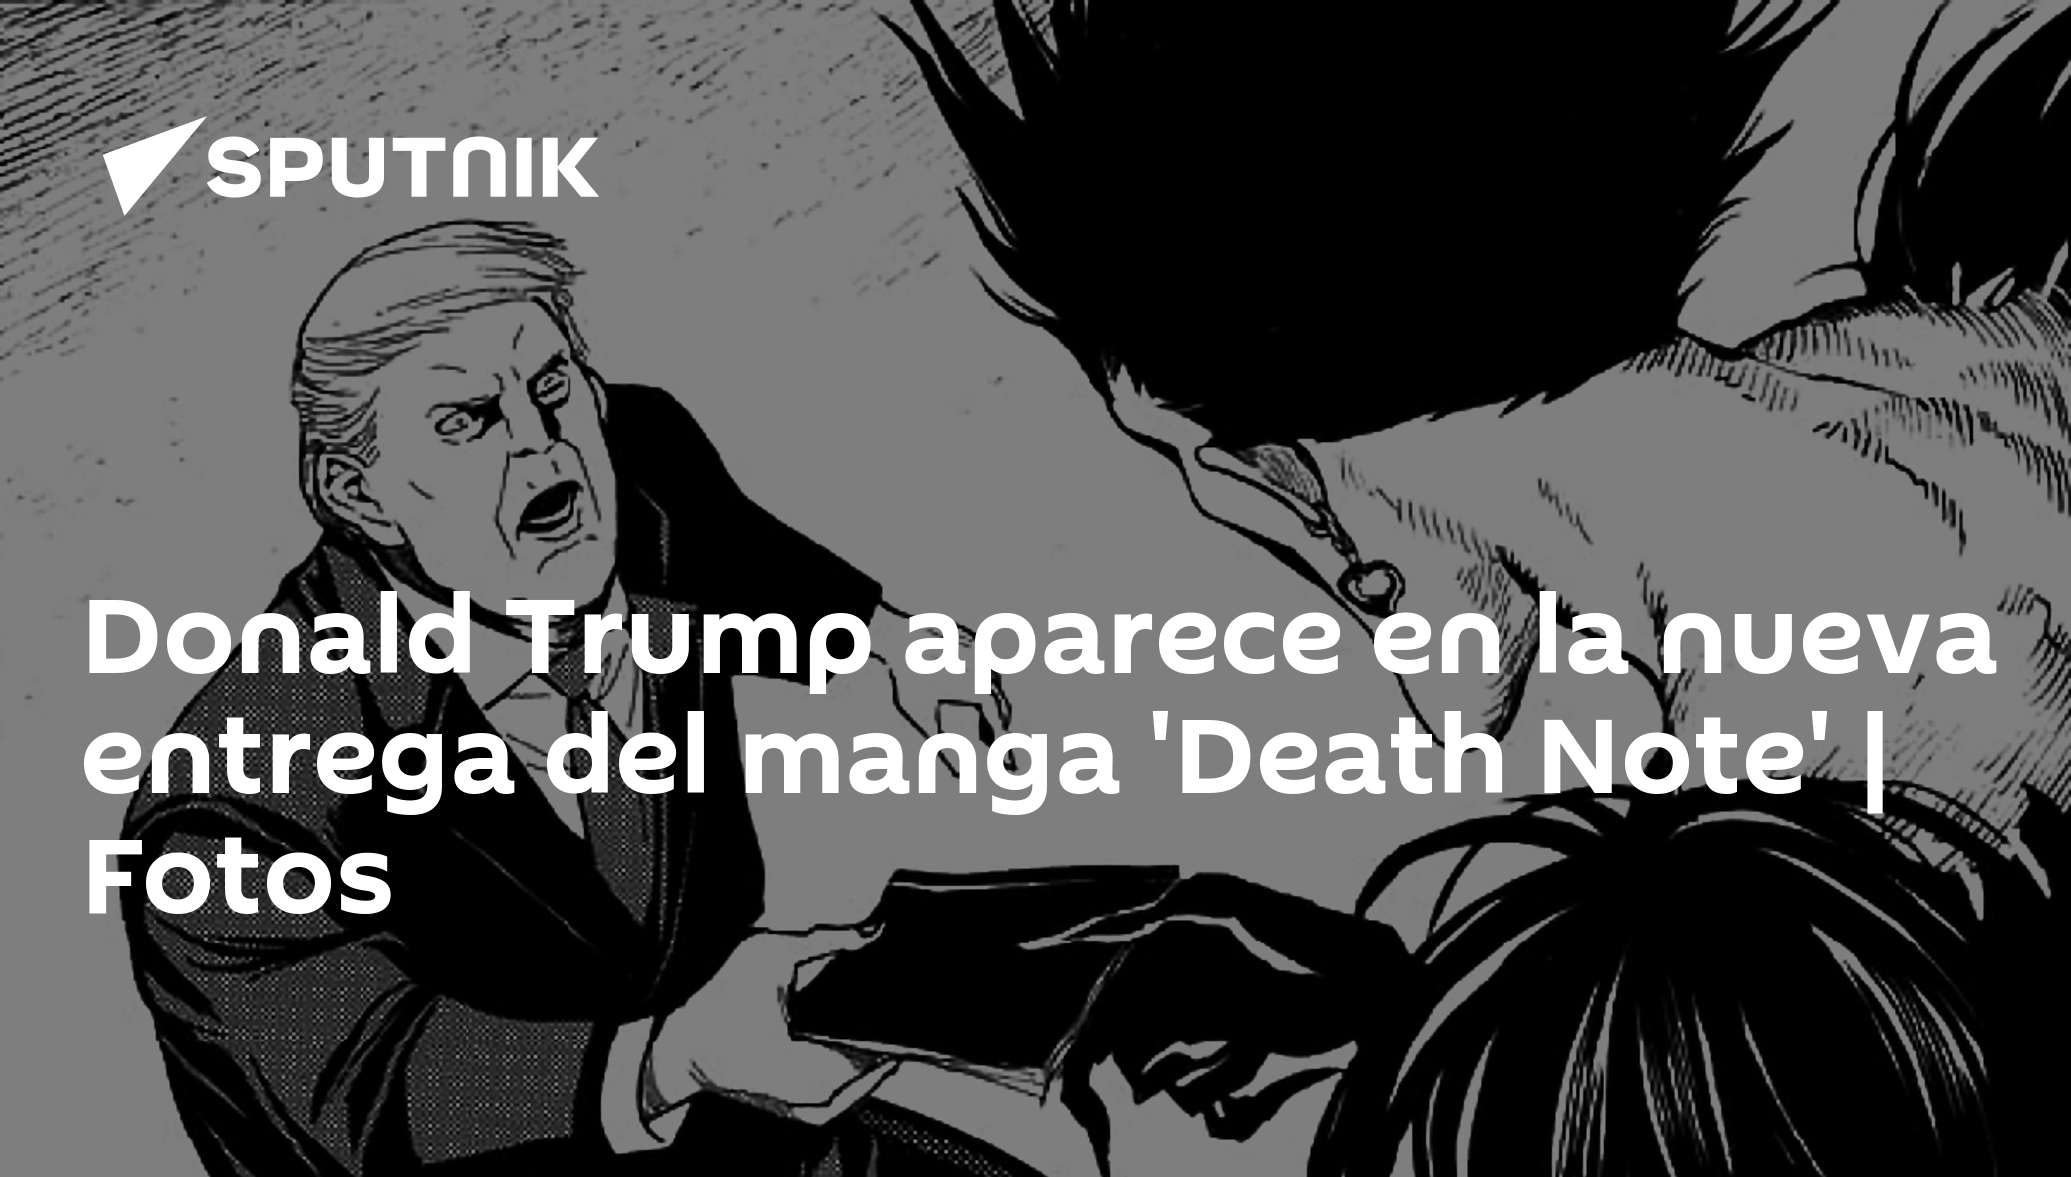 Death Note volta depois de 12 anos - e provoca Donald Trump no novo mangá